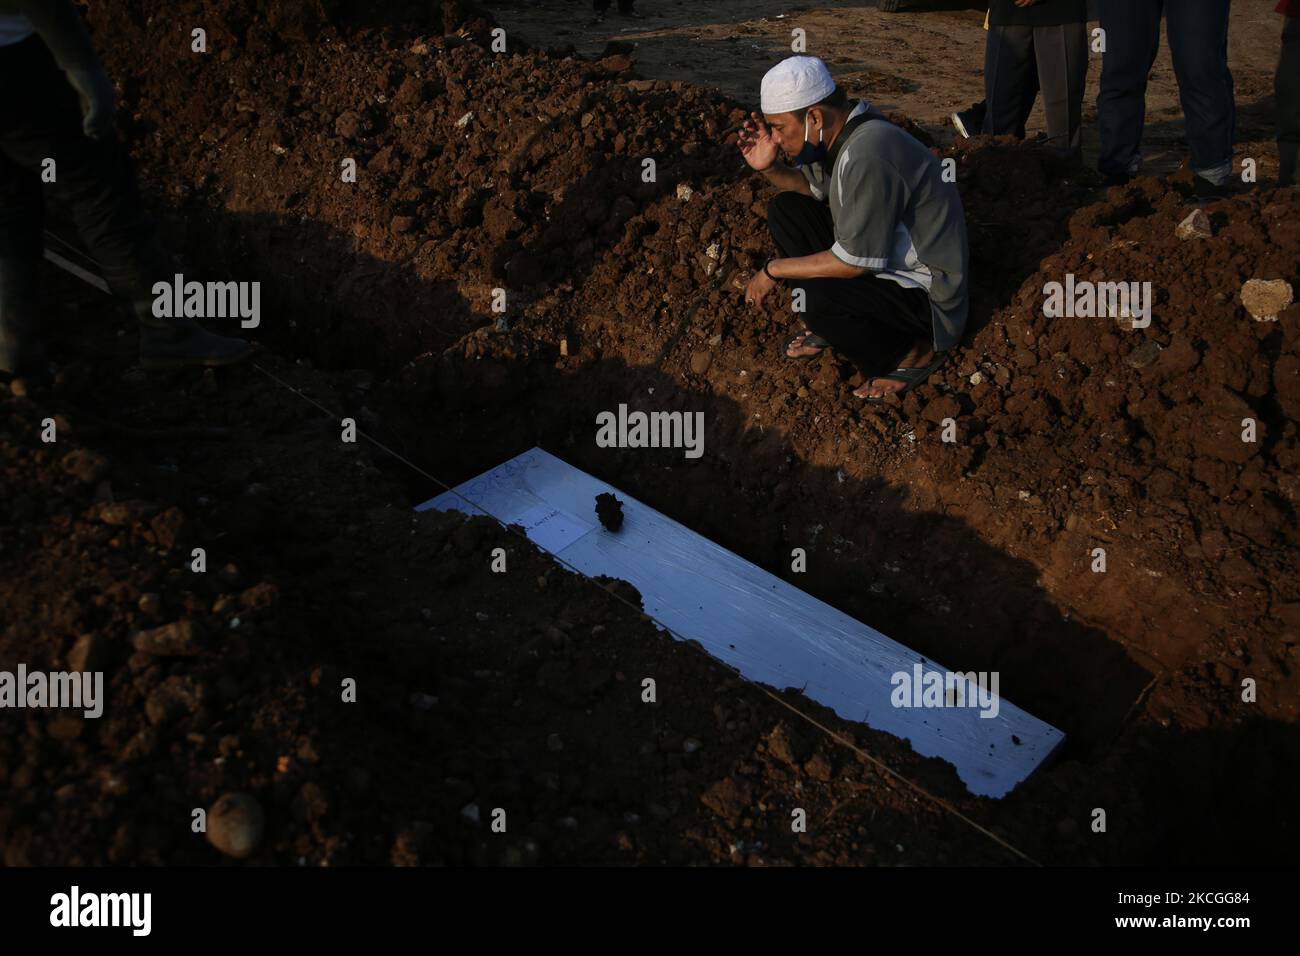 Usando ropa de protección (Hazmat) que dice ''Stop, Don't Add More'', (Stop Jangan Nambah Lagi) los funcionarios funerarios enterrarán los cuerpos de COVID-19 en el Cementerio Público de Rootan, North Jakarta, en 26,2021. Los oficiales de entierro han estado llevando a cabo sus tareas sin detenerse ya que hubo un aumento en el caso del virus Covid-19, enterraron los cuerpos de alrededor de 80 a 100 ataúdes Covid-19 más en un día de la mañana a la noche. (Foto de Dasril Roszandi/NurPhoto) Foto de stock